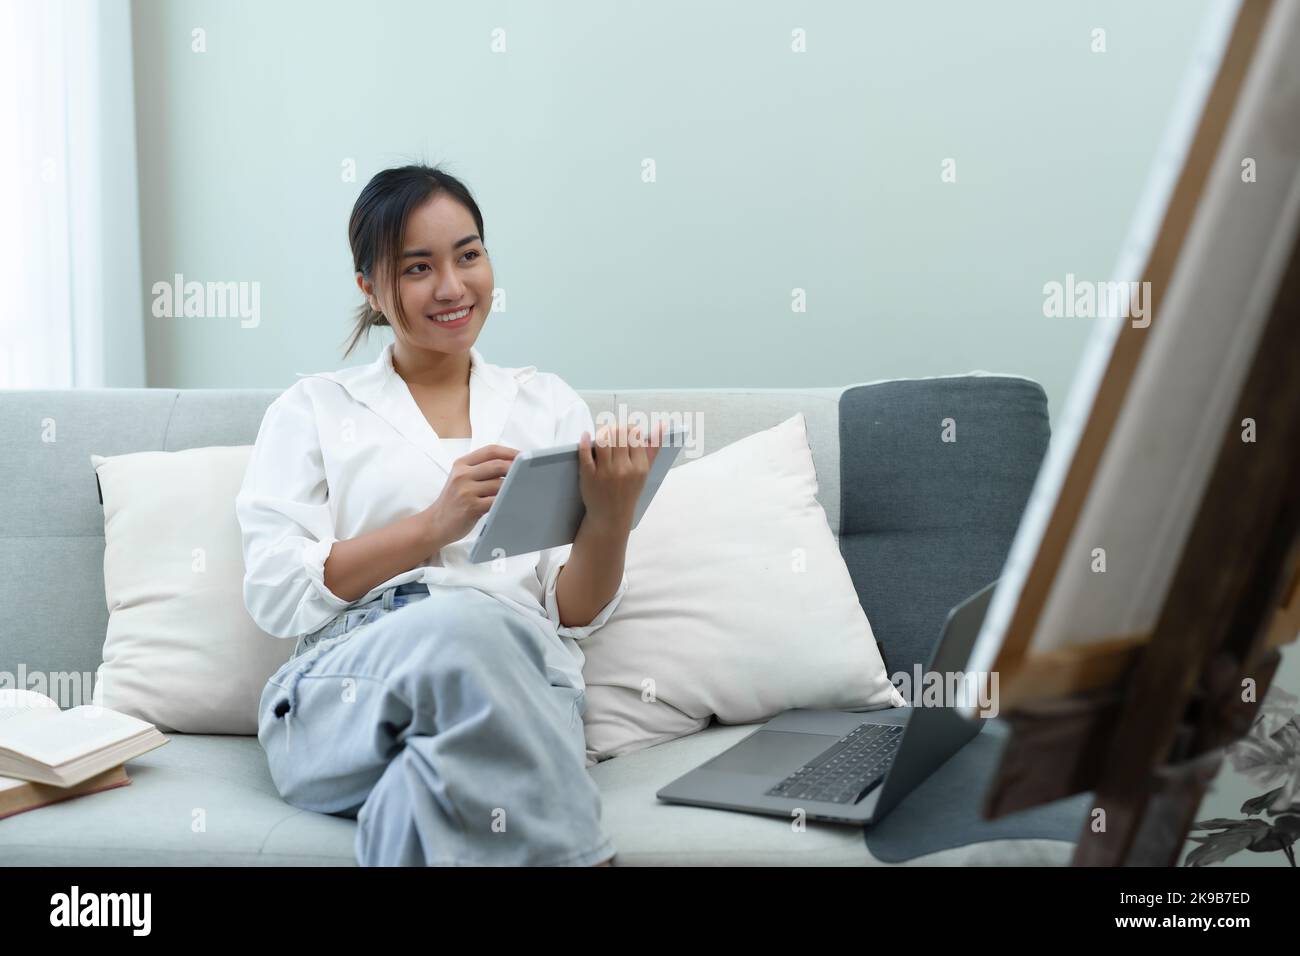 Portrait d'une femme asiatique utilisant une tablette pour peindre des œuvres d'art sur un canapé. Banque D'Images